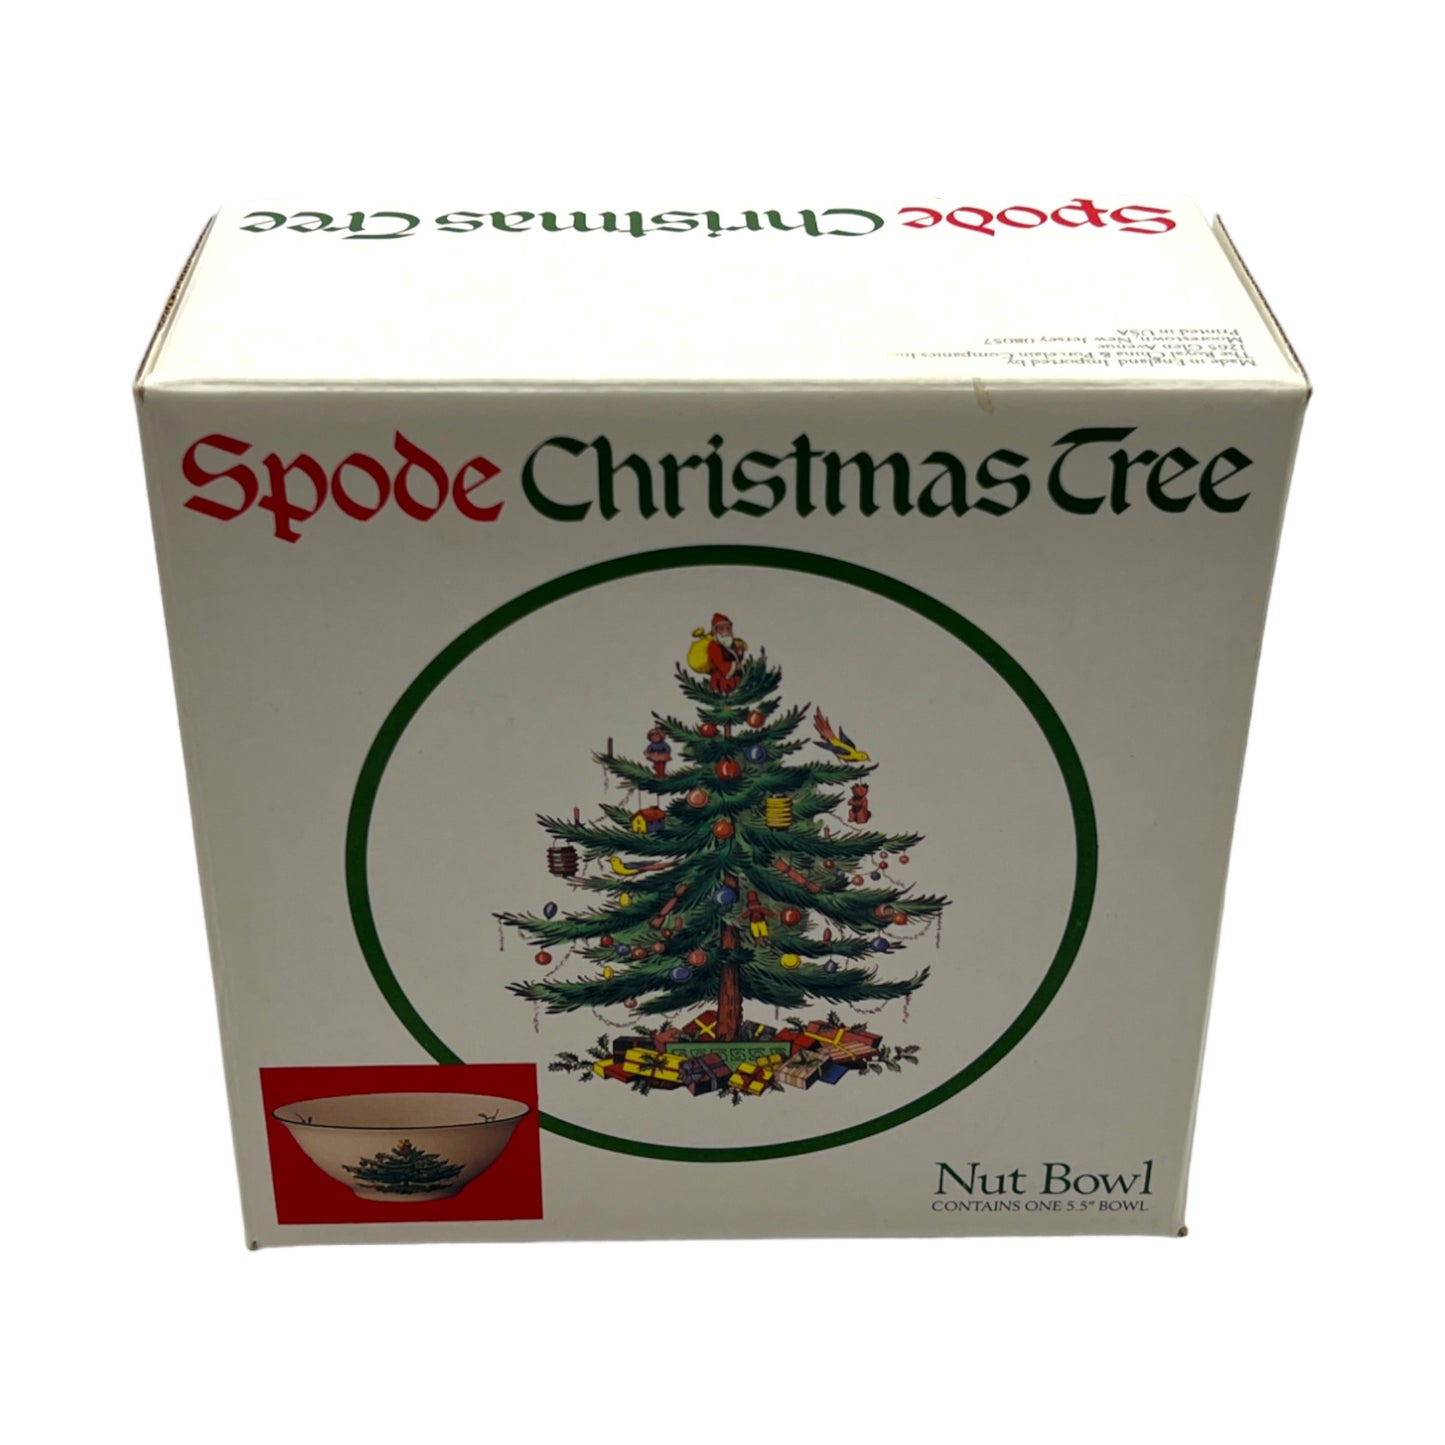 Spode - Christmas Tree Nut Bowl - Original Box - 5.5"